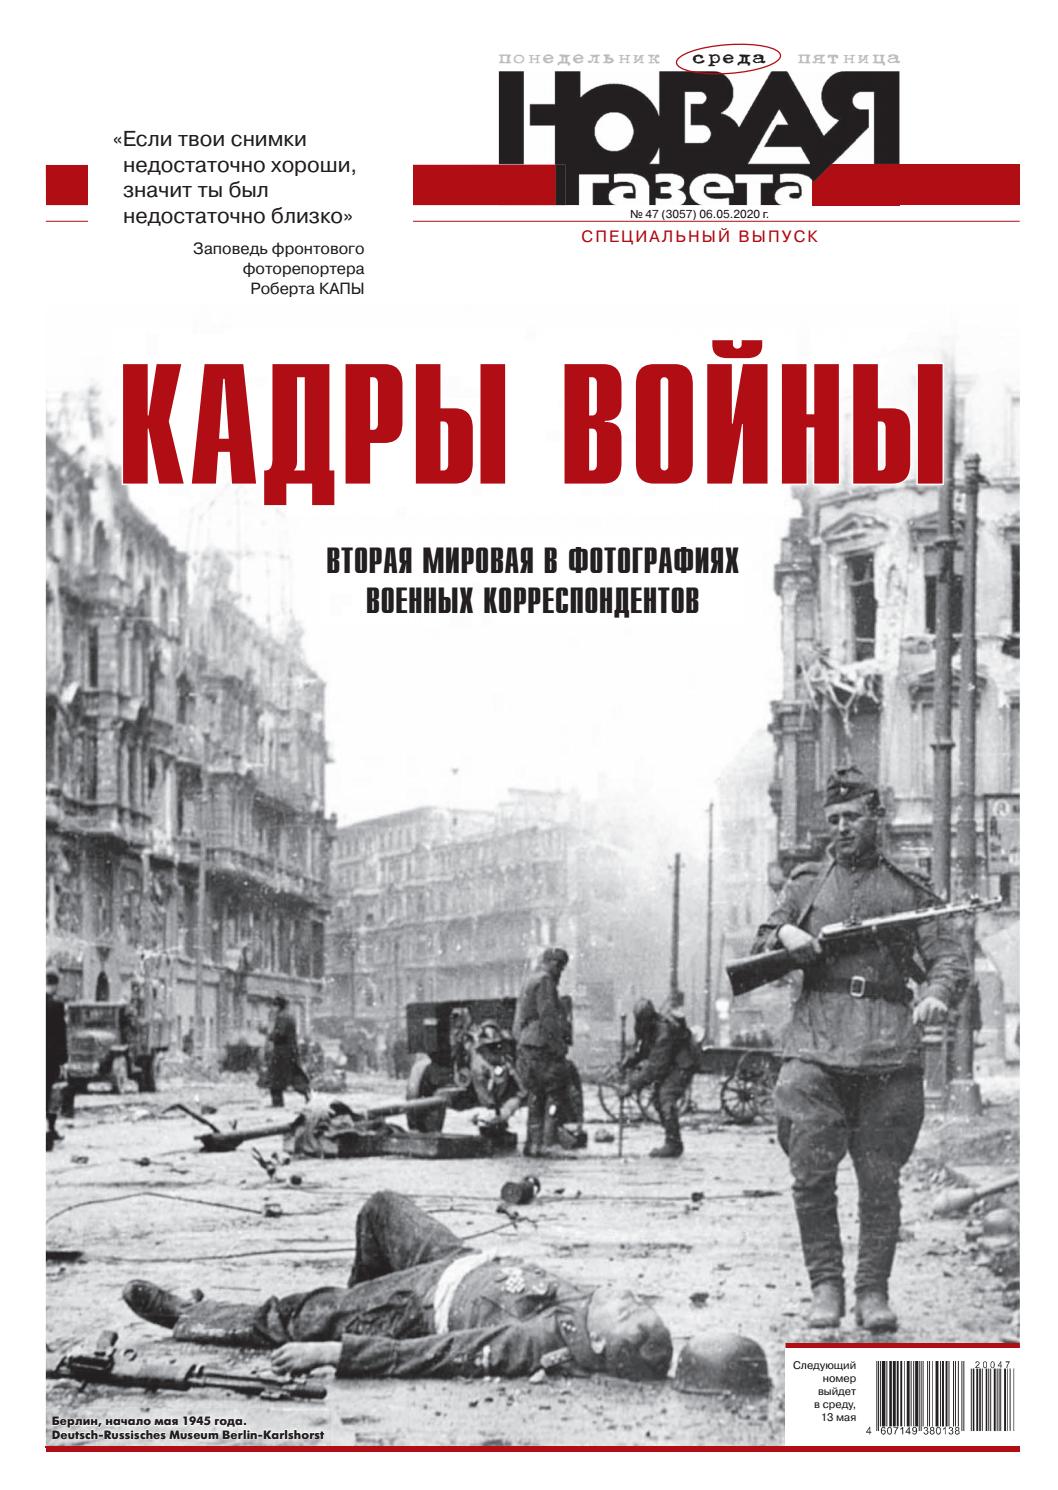 Новая газета. Специальный выпуск №47 (среда), 6 марта 2020